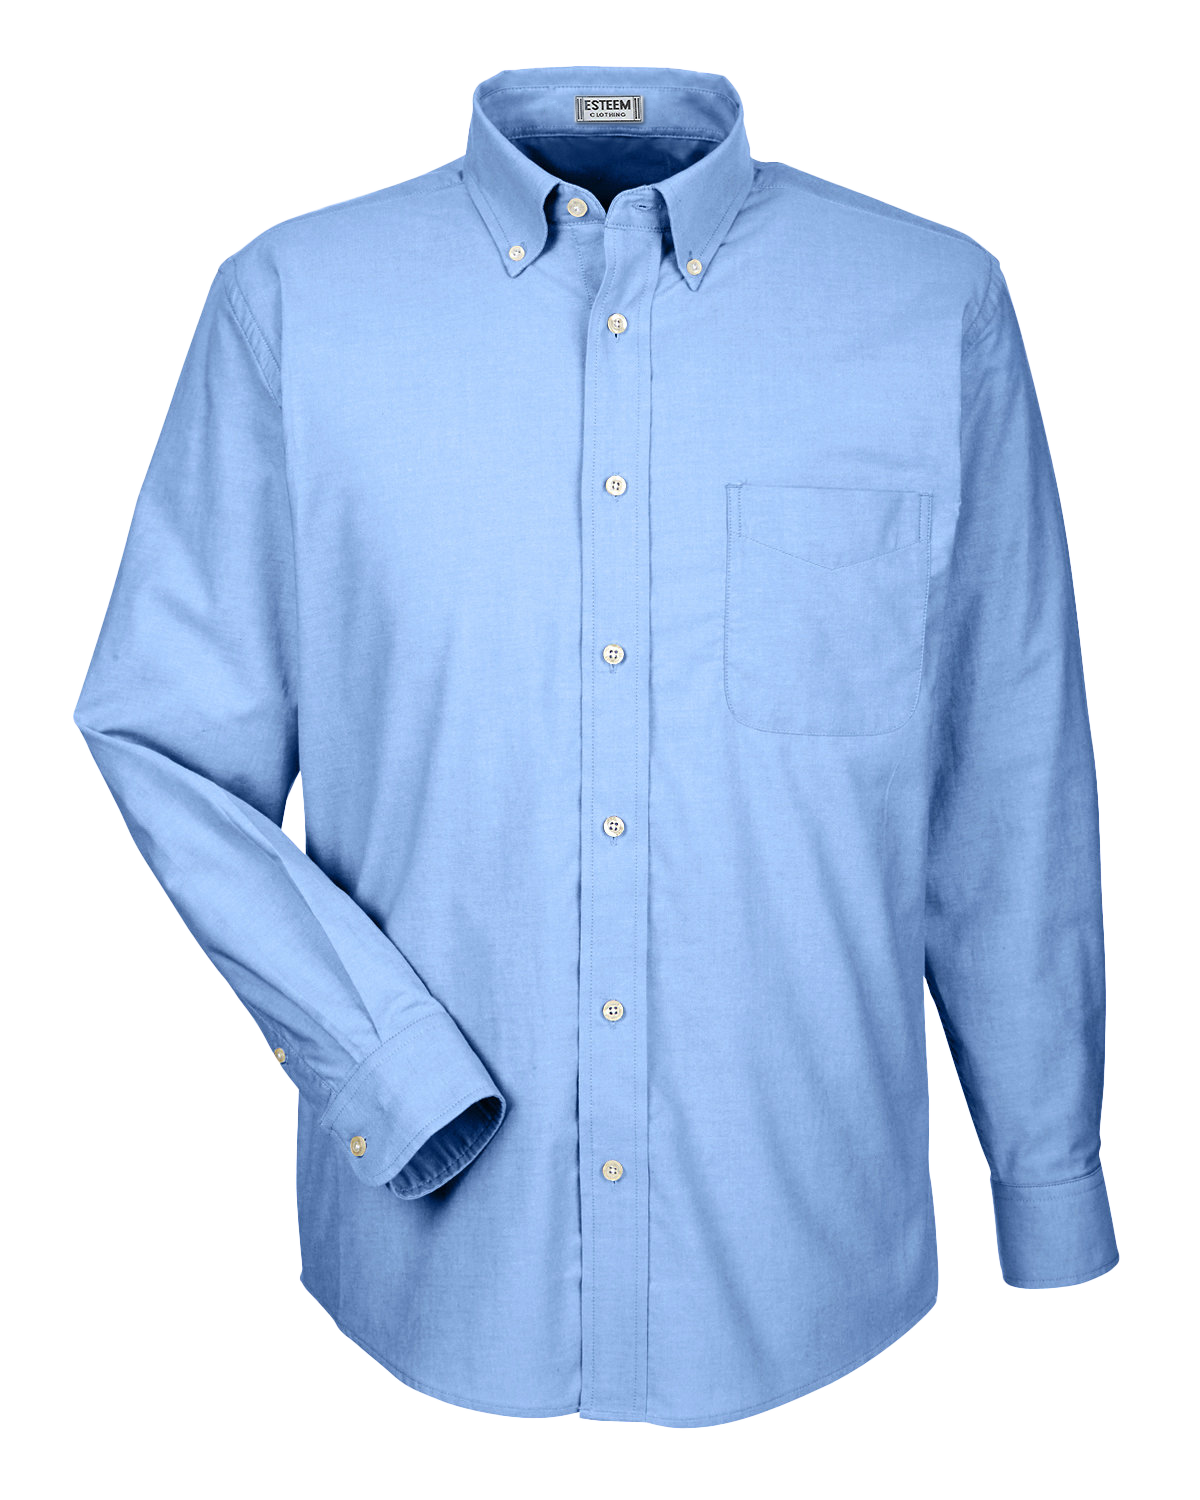 Men's Long sleeve Oxford Dress Shirt - Code 33802